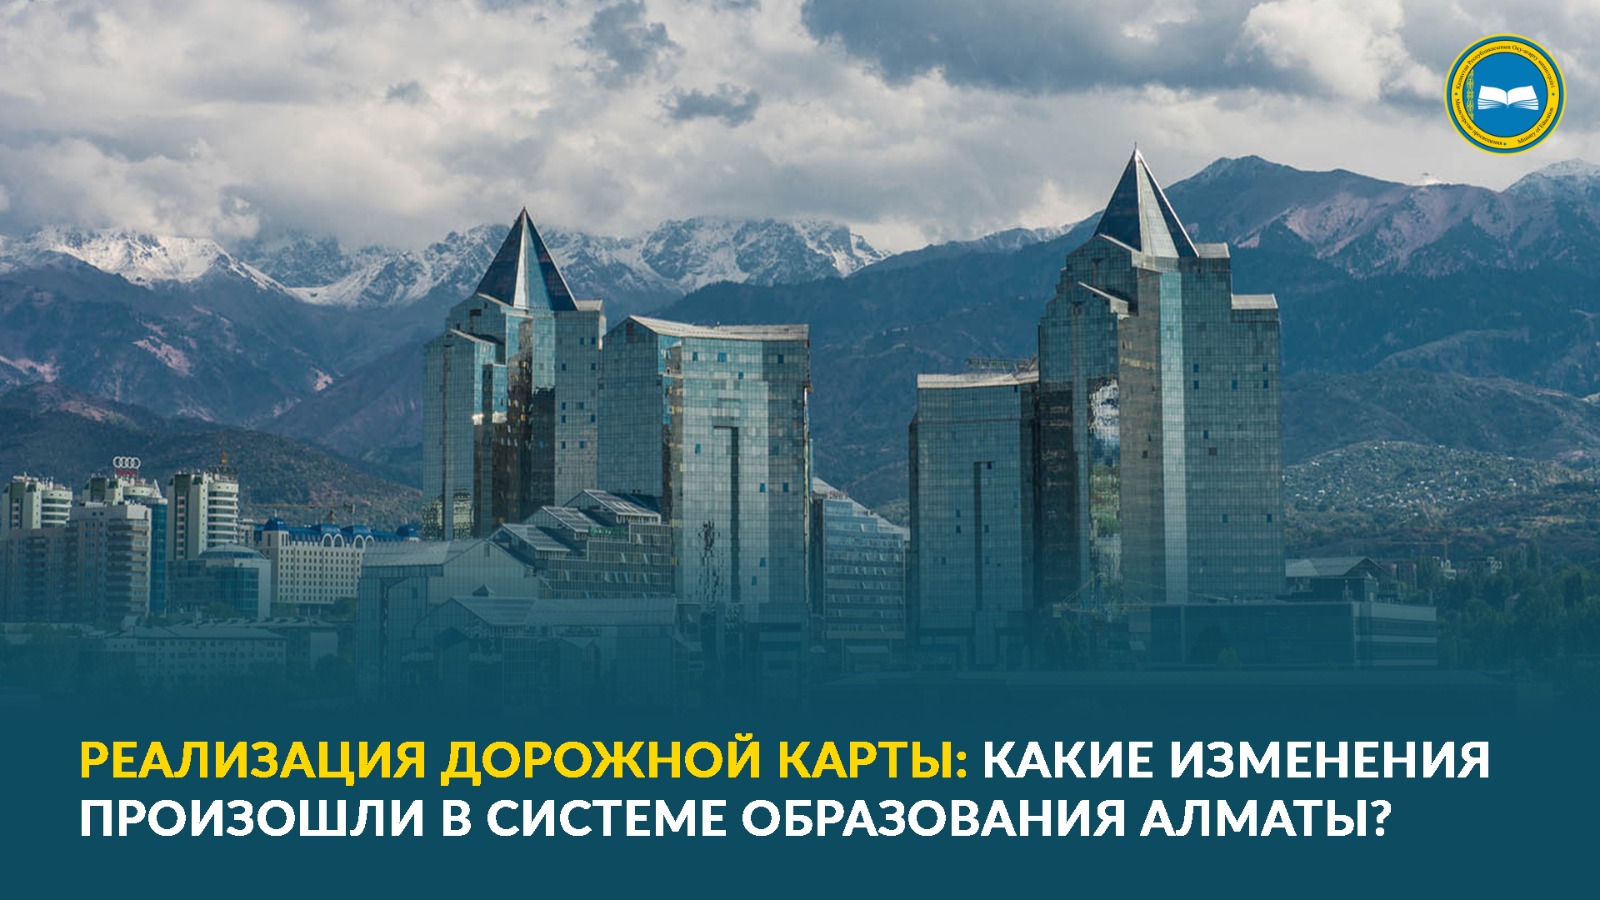 РЕАЛИЗАЦИЯ ДОРОЖНОЙ КАРТЫ: какие изменения произошли в системе образования Алматы?